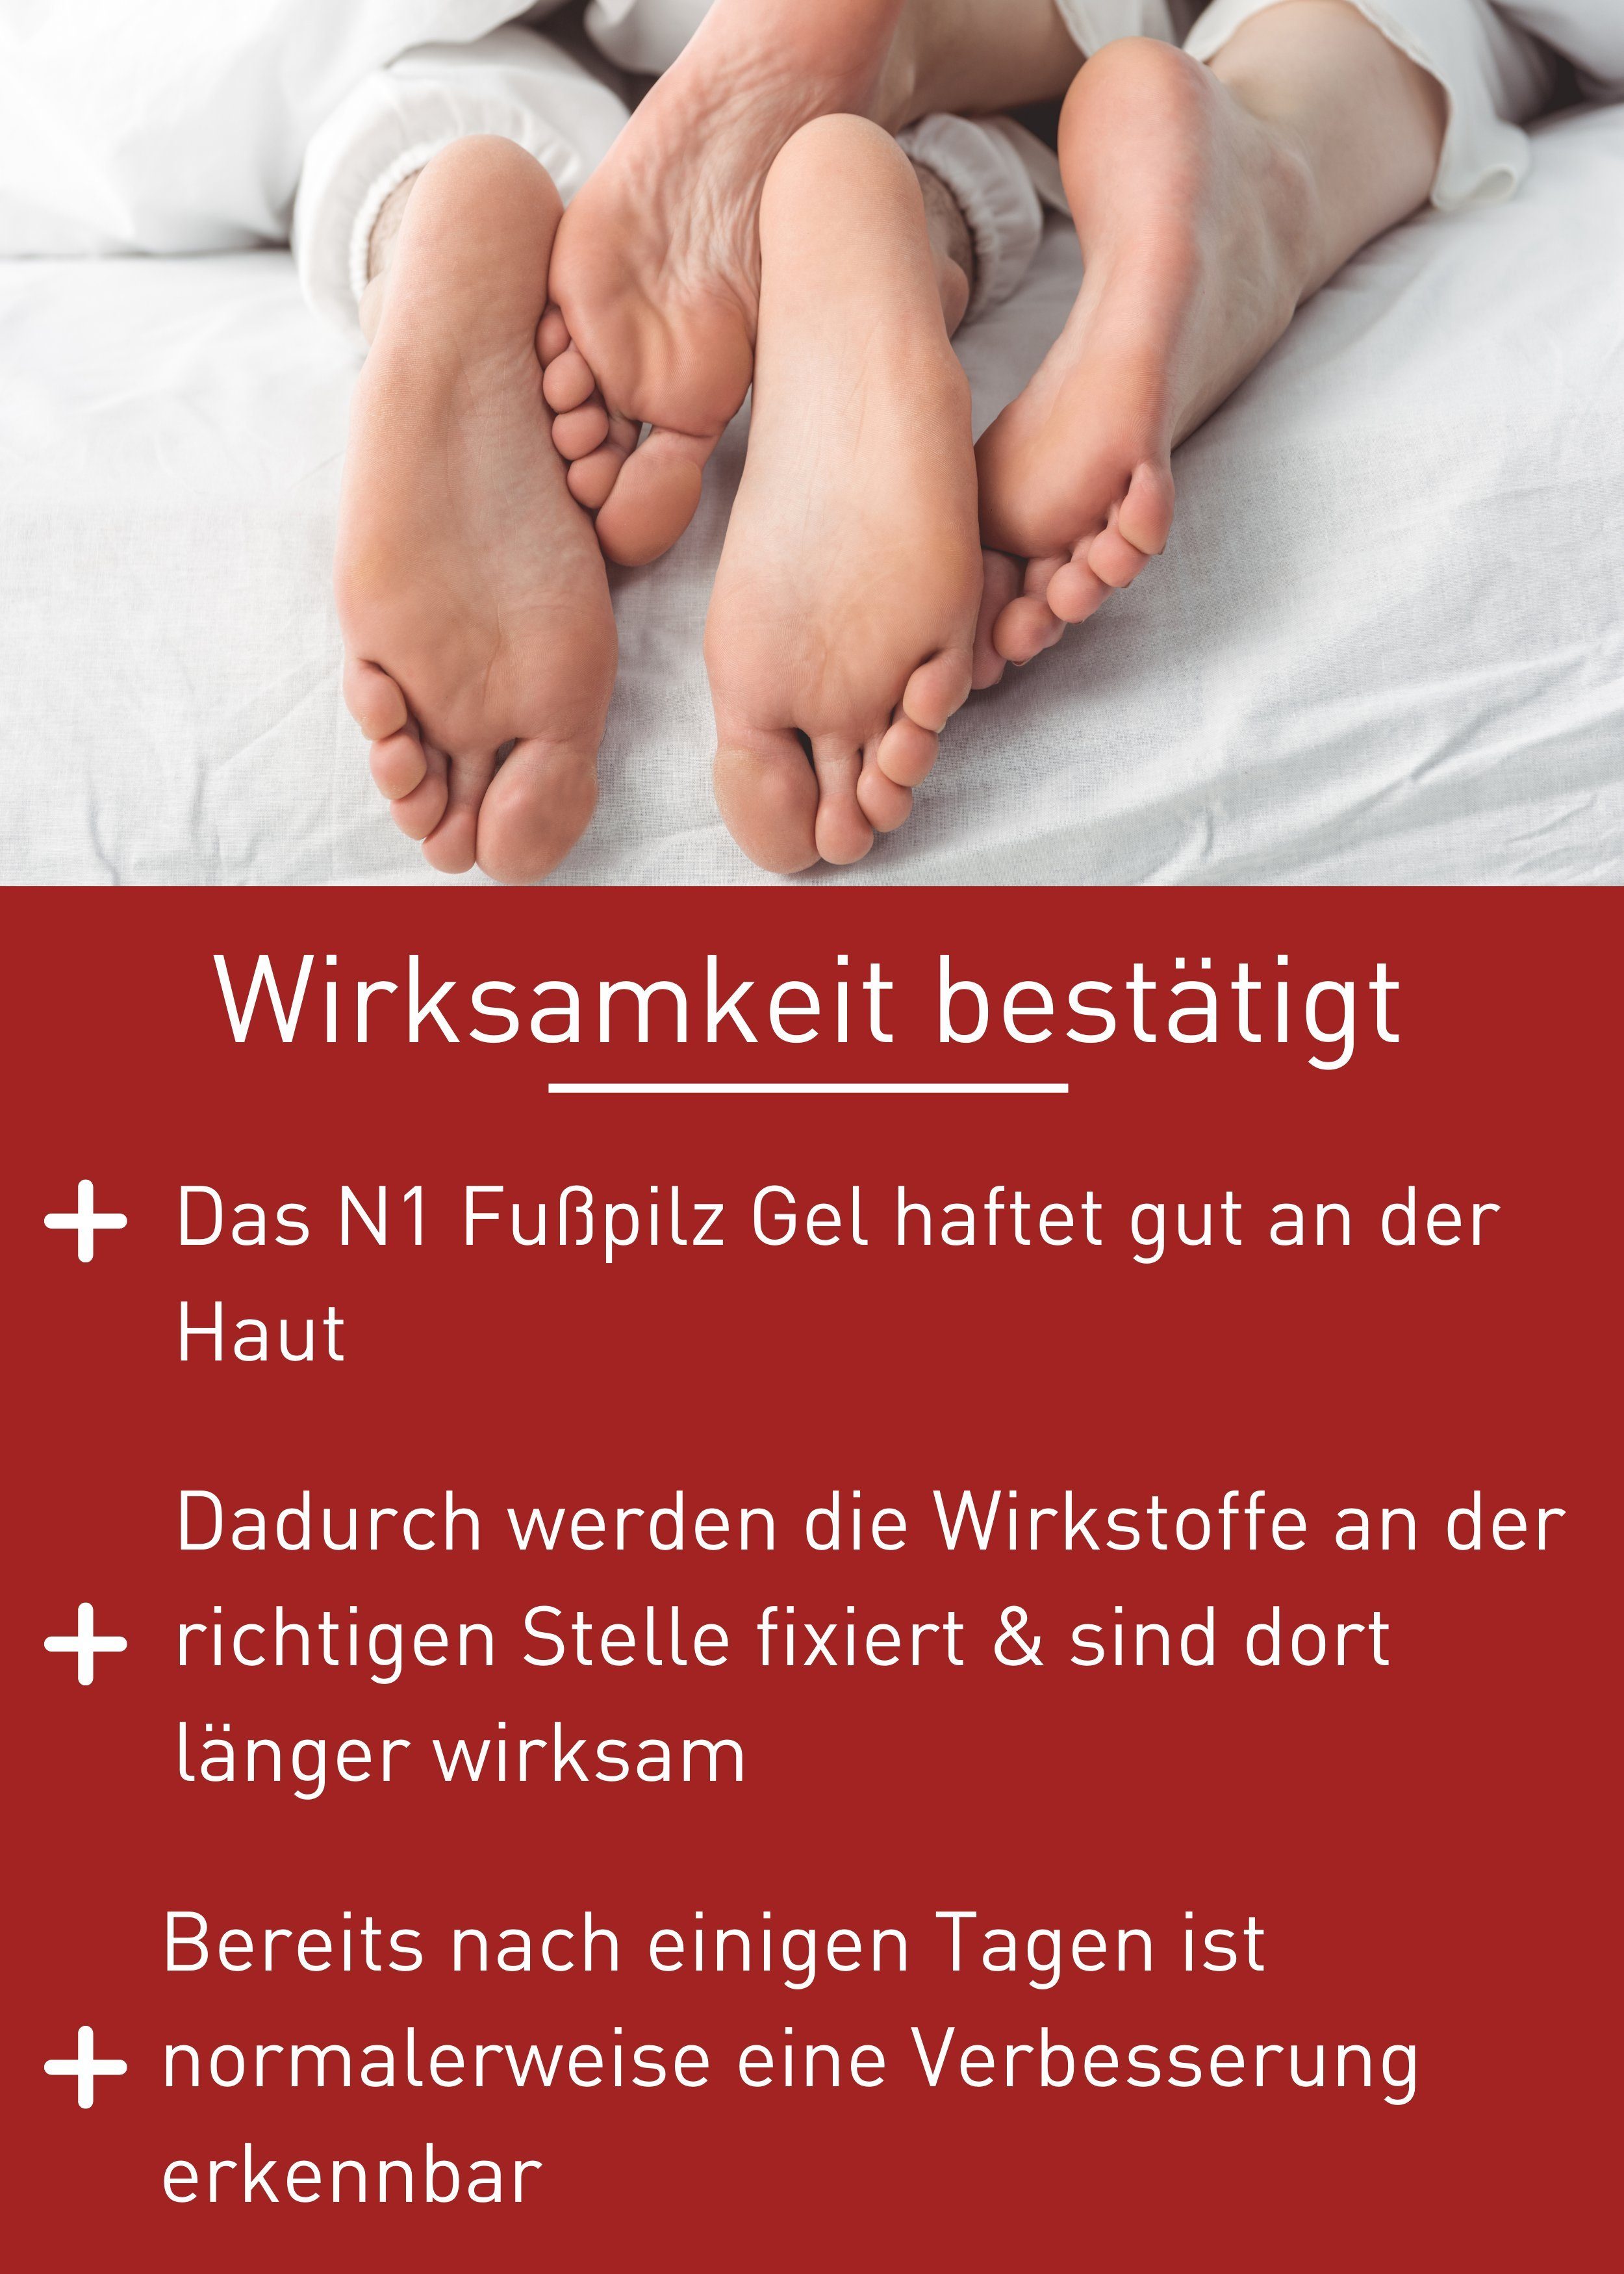 N1 Healthcare von Fußpflegecreme Fußpilz zur Behandlung Rezeptur patentierte Gel Fußpilz, Medizinprodukt